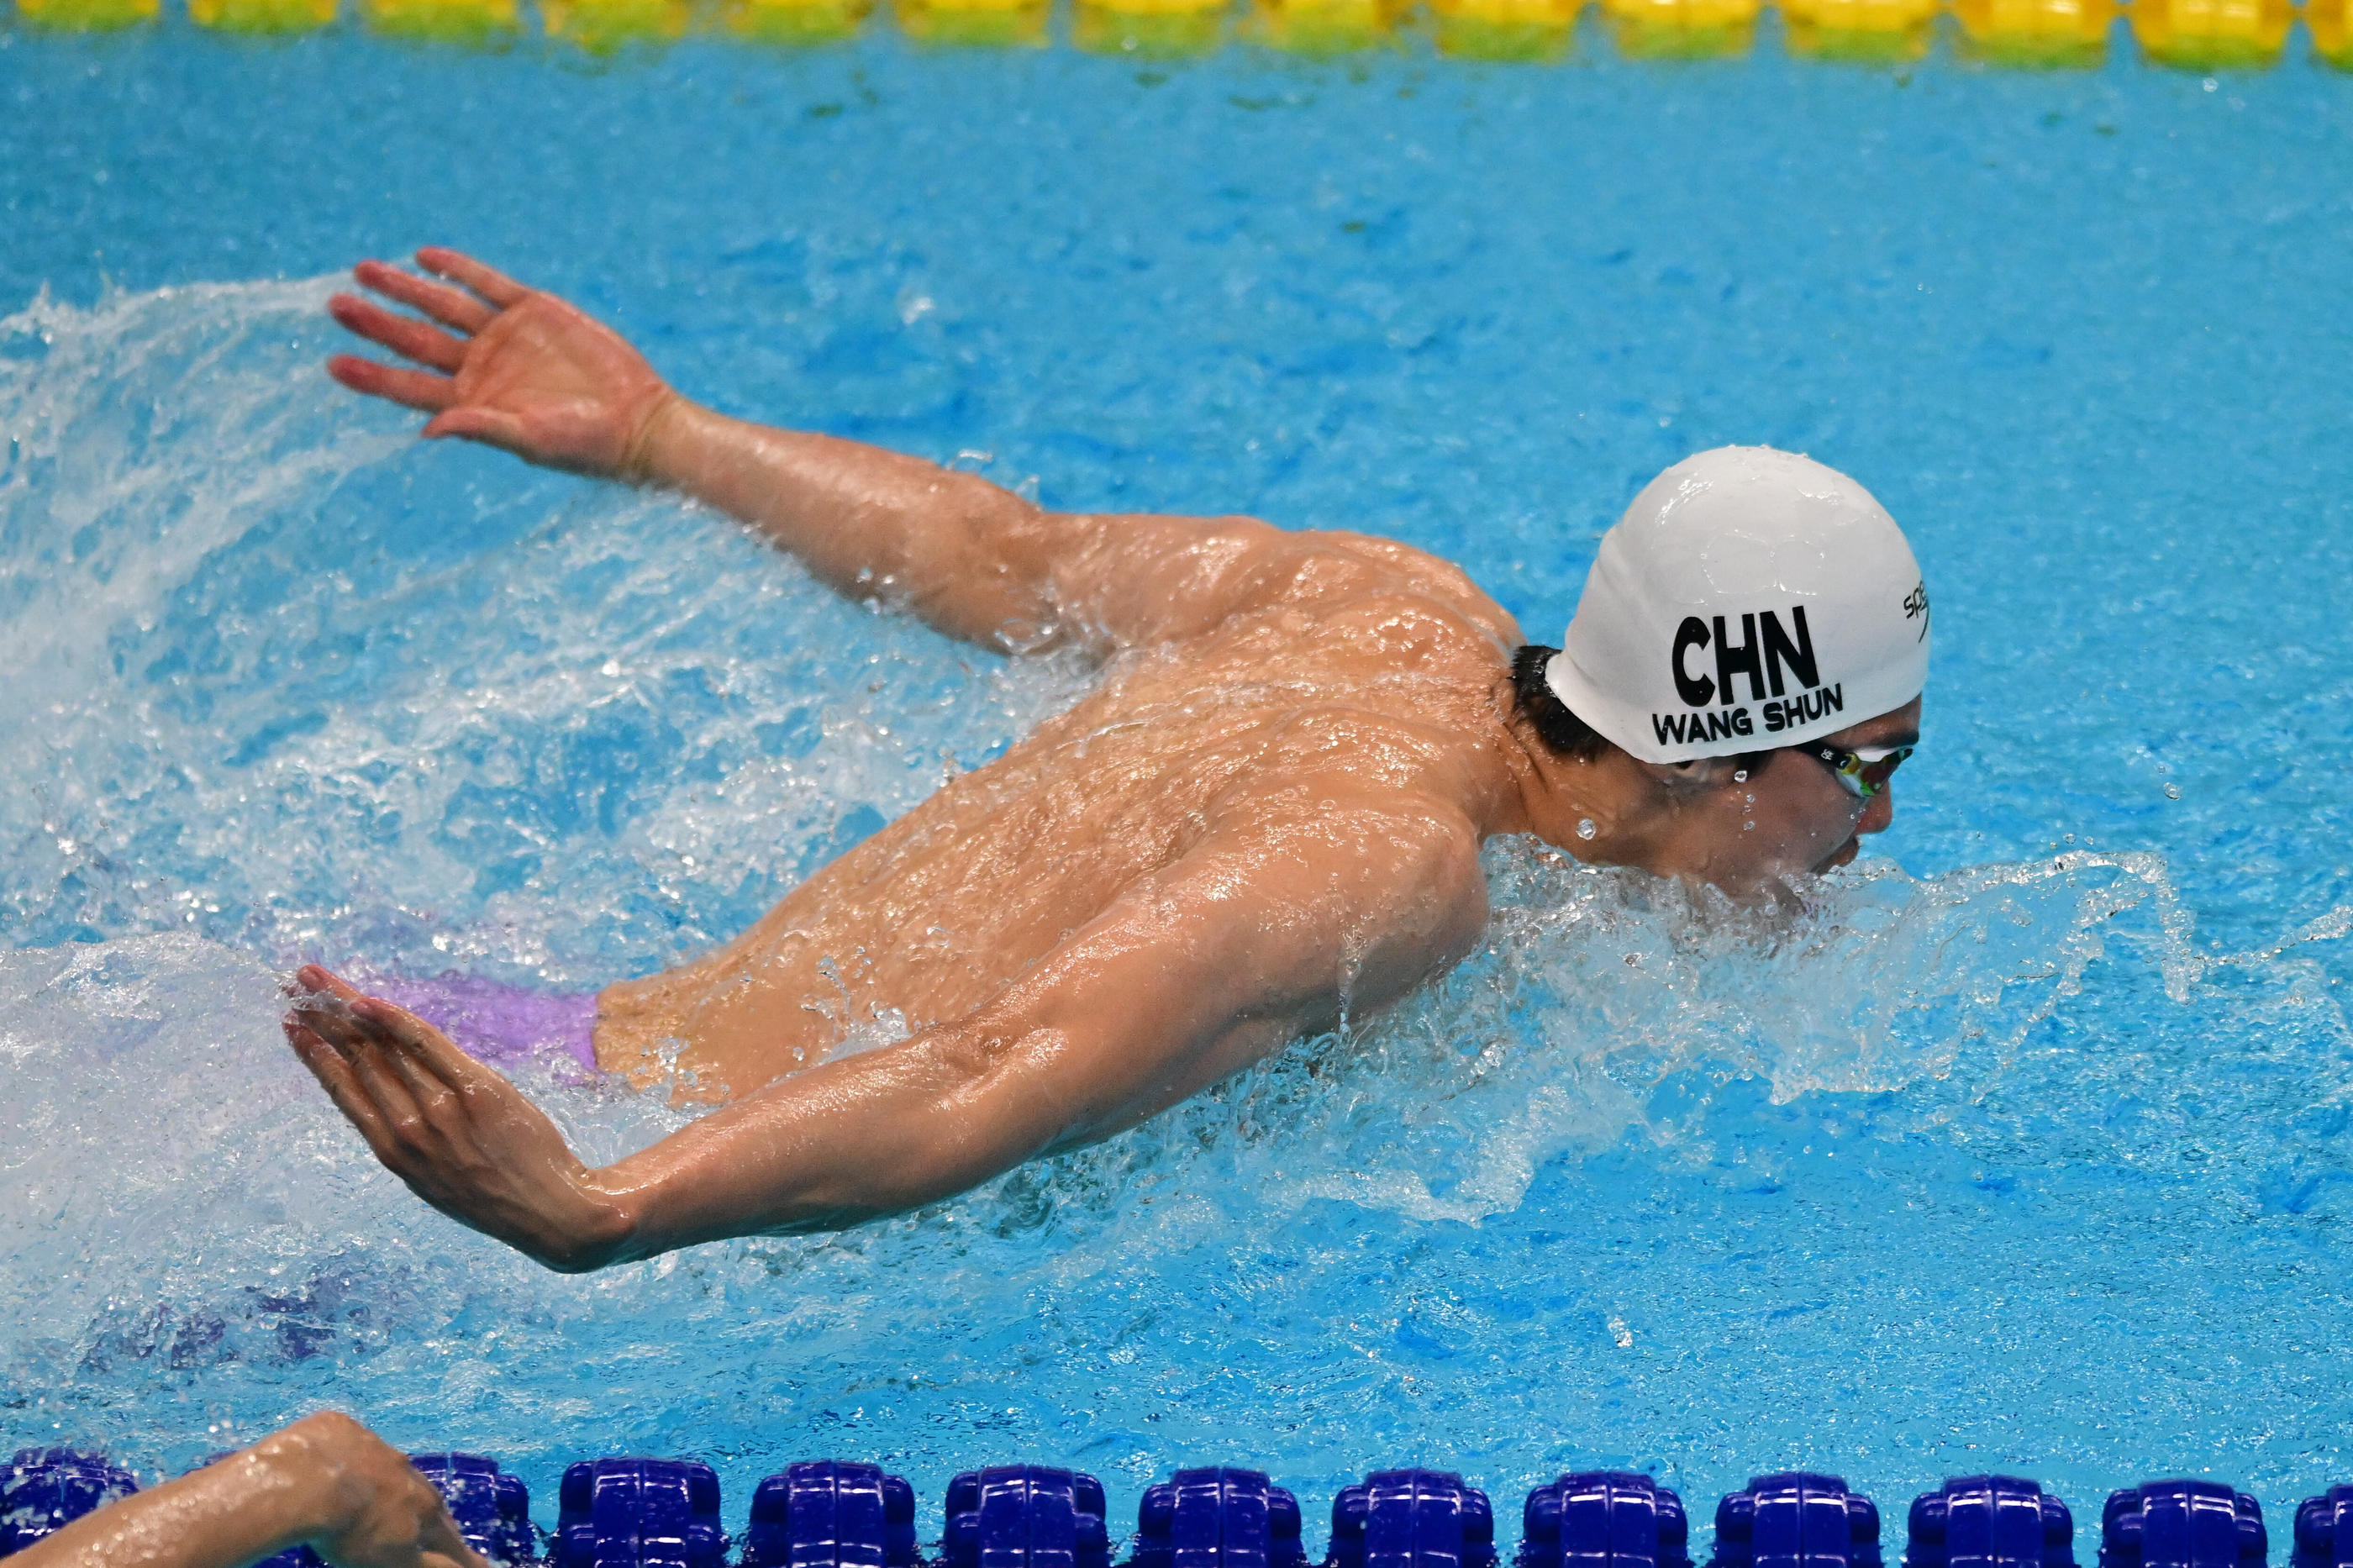 Champion olympique du 200m quatre nages en 2021, Wang Shun fait partie des nageurs mis en cause dans l'affaire de dopage qui secoue la natation chinoise ces derniers jours. Icon Sport/Luis Veniegra